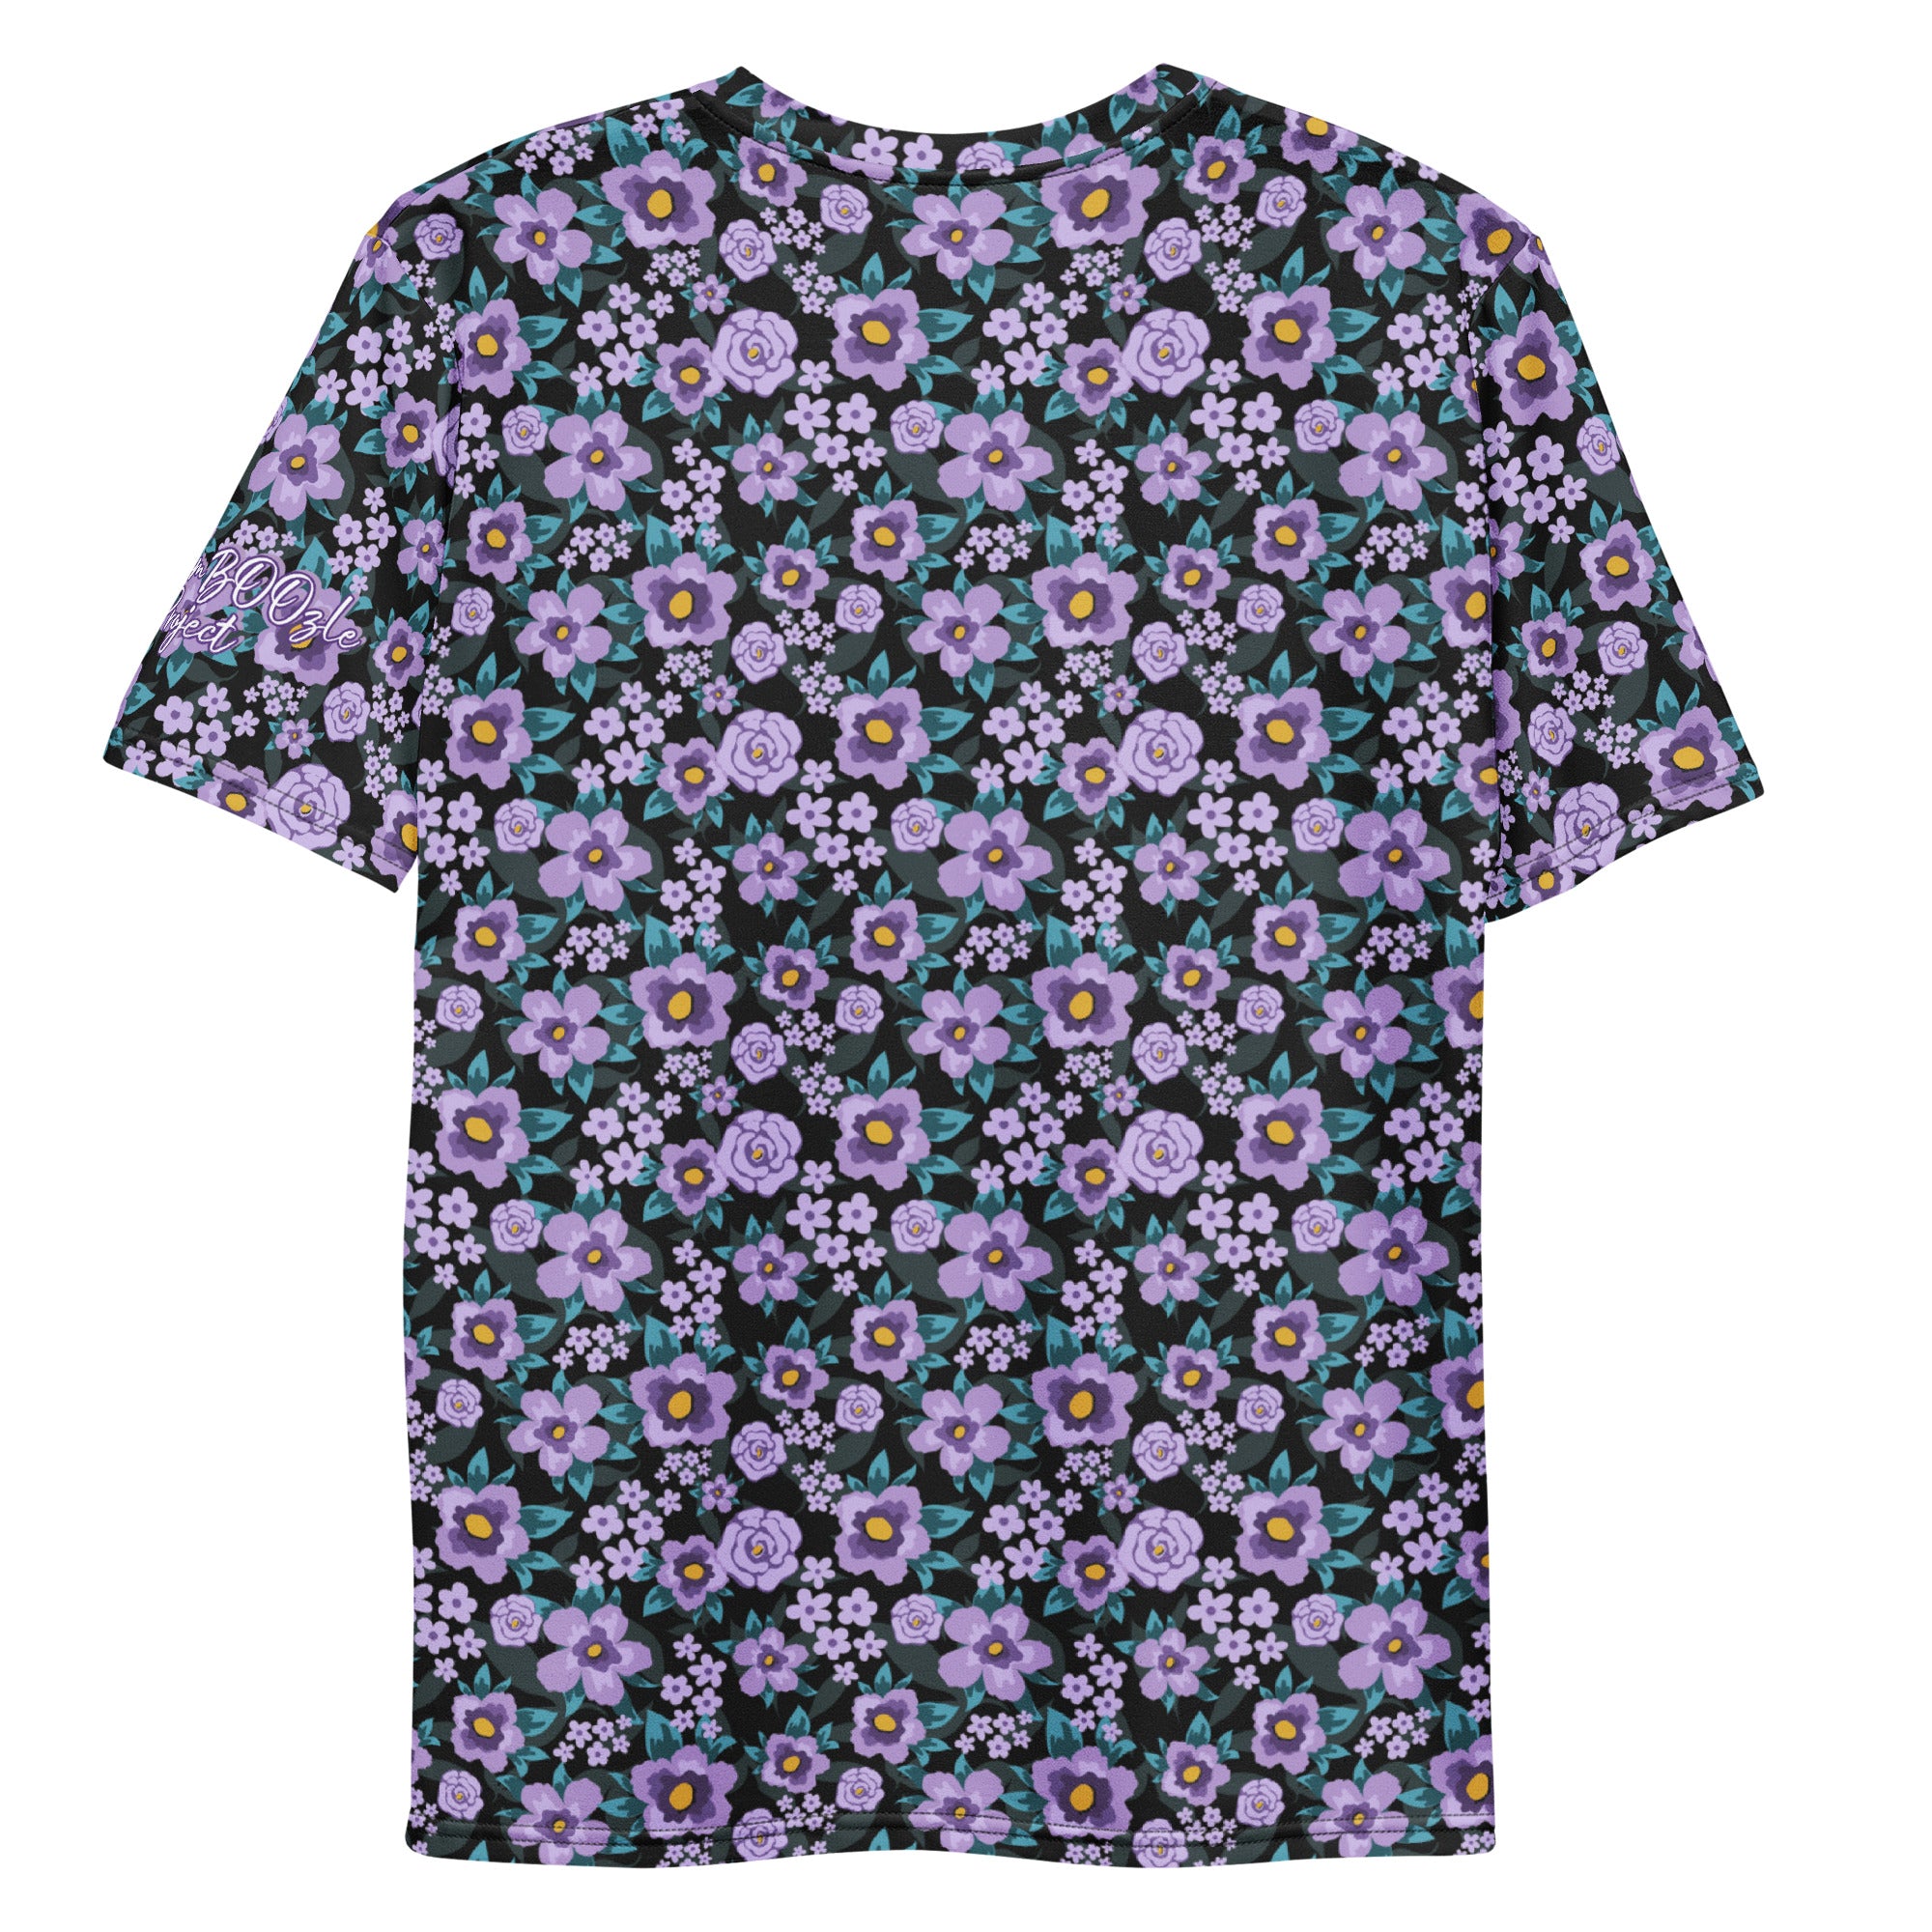 TBP Purple Floral Unisex T-shirt